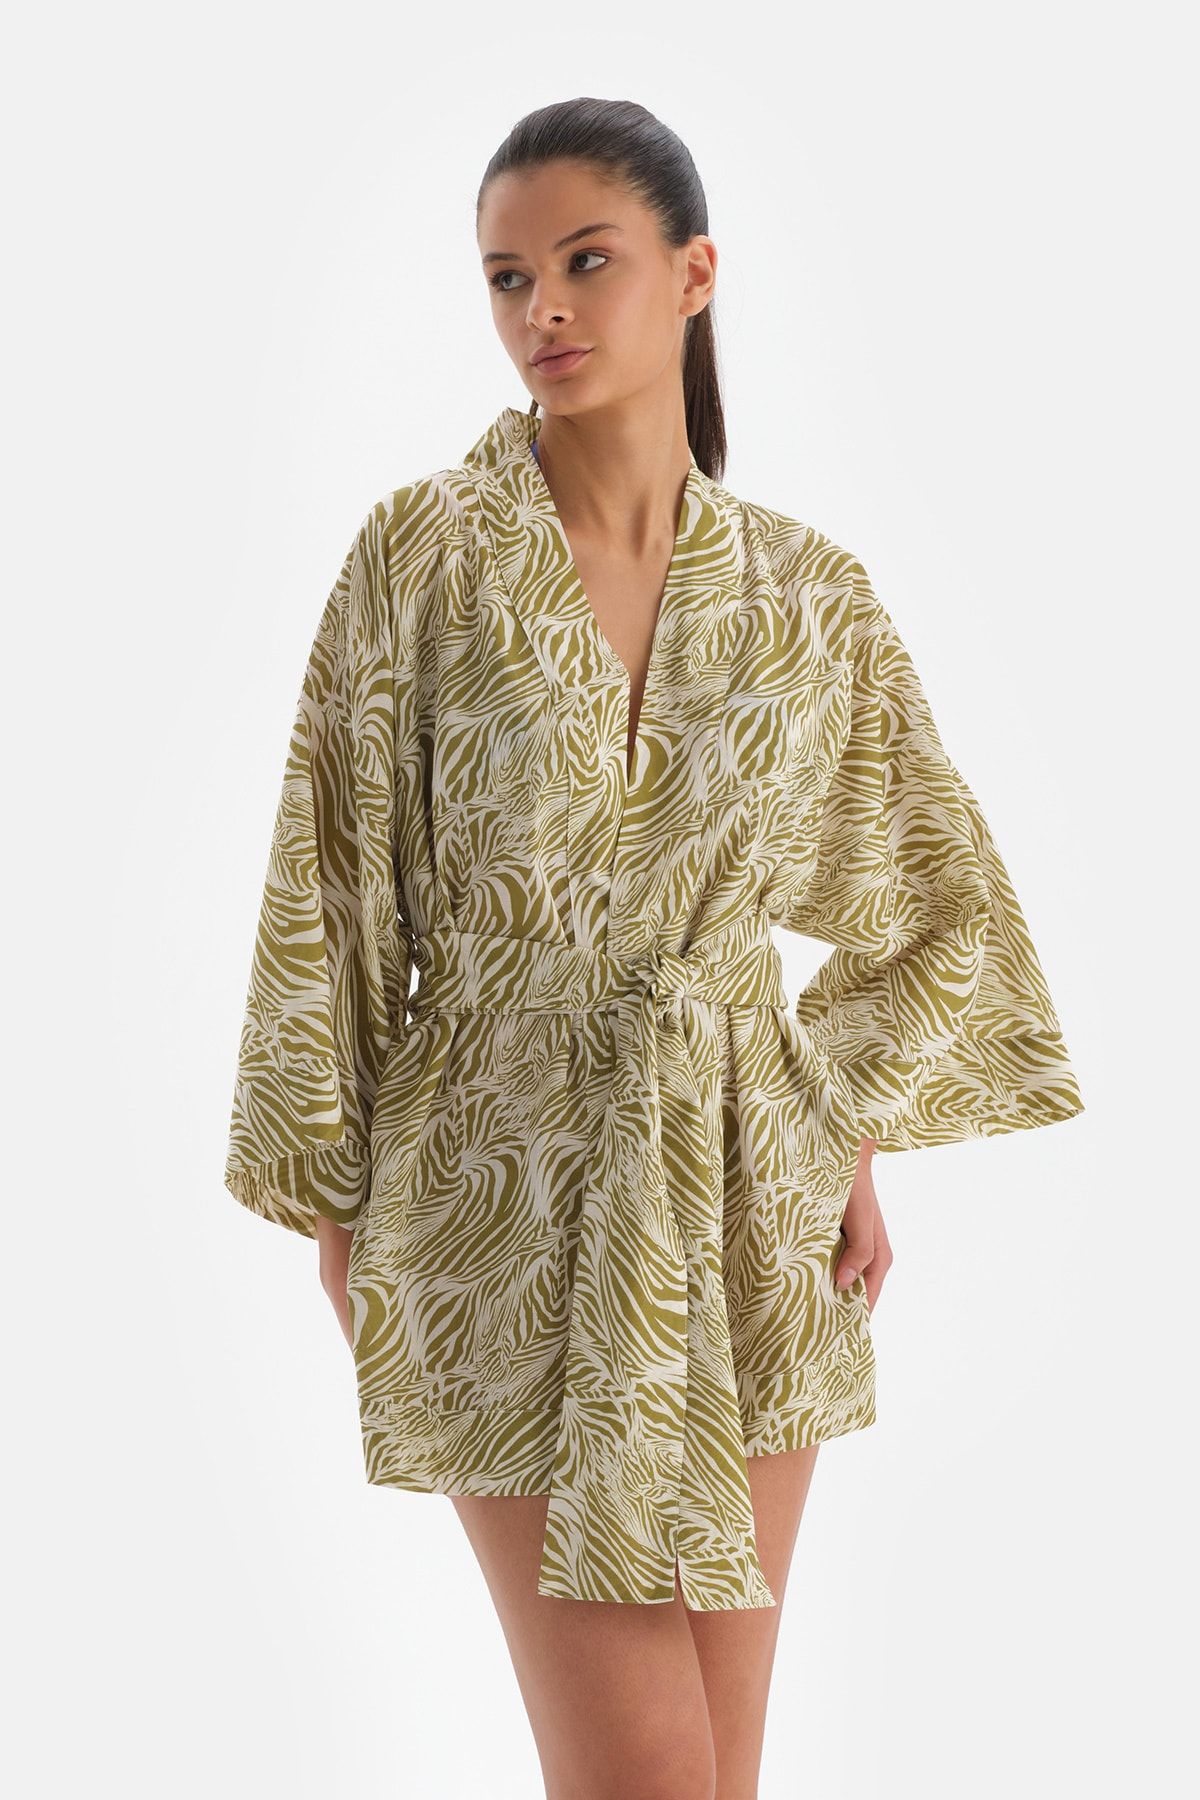 Dagi Yeşil-Beyaz Pamuklu Kimono